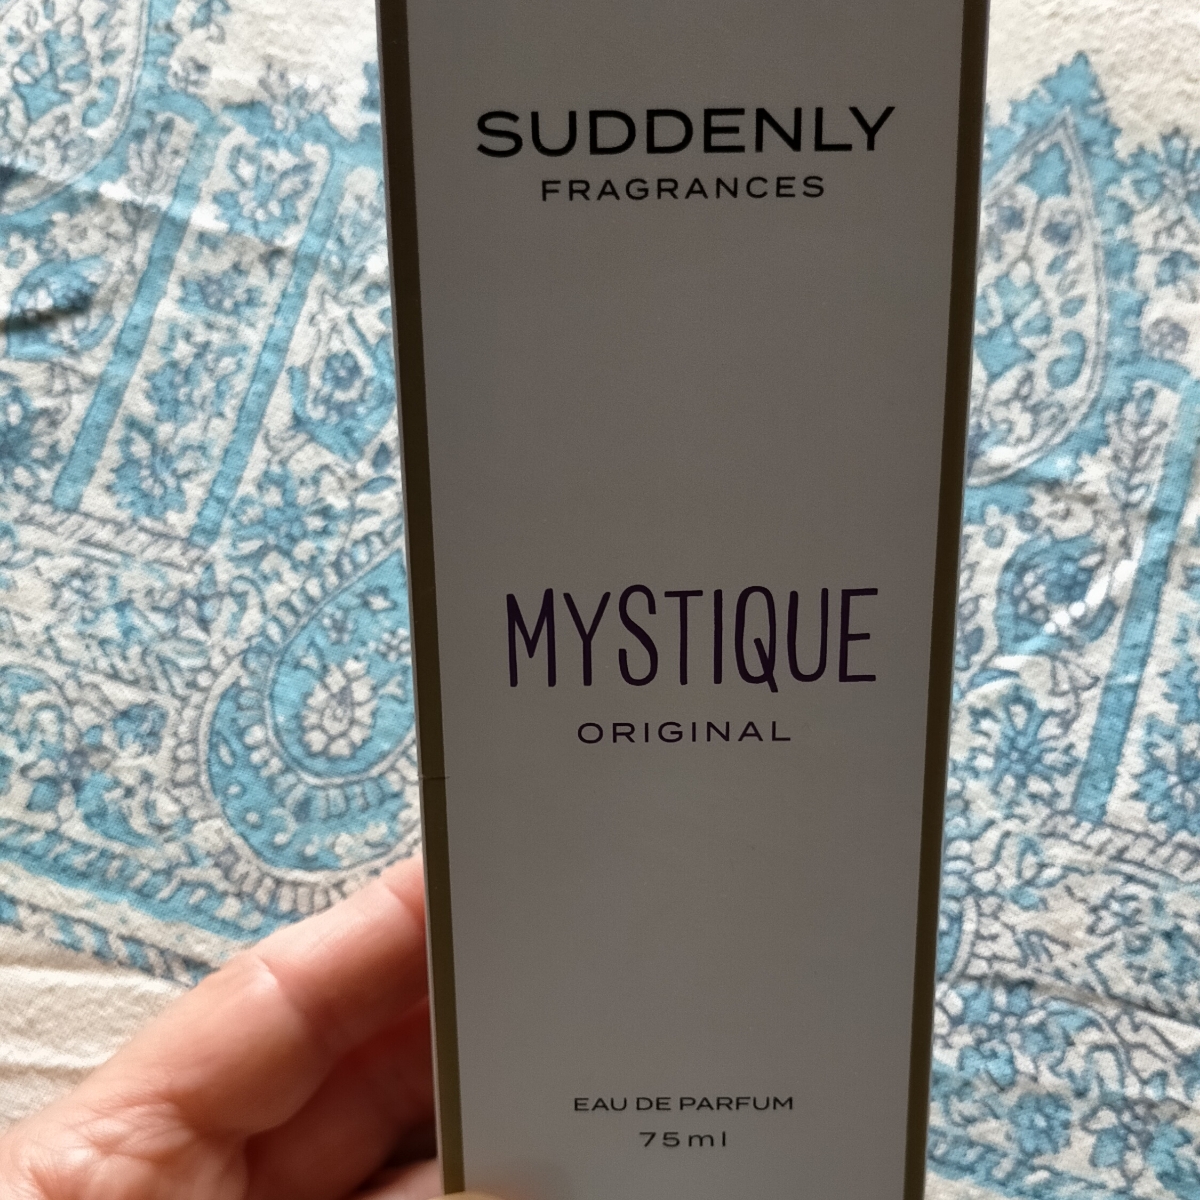 Suddenly fragrances Mystique Reviews | abillion